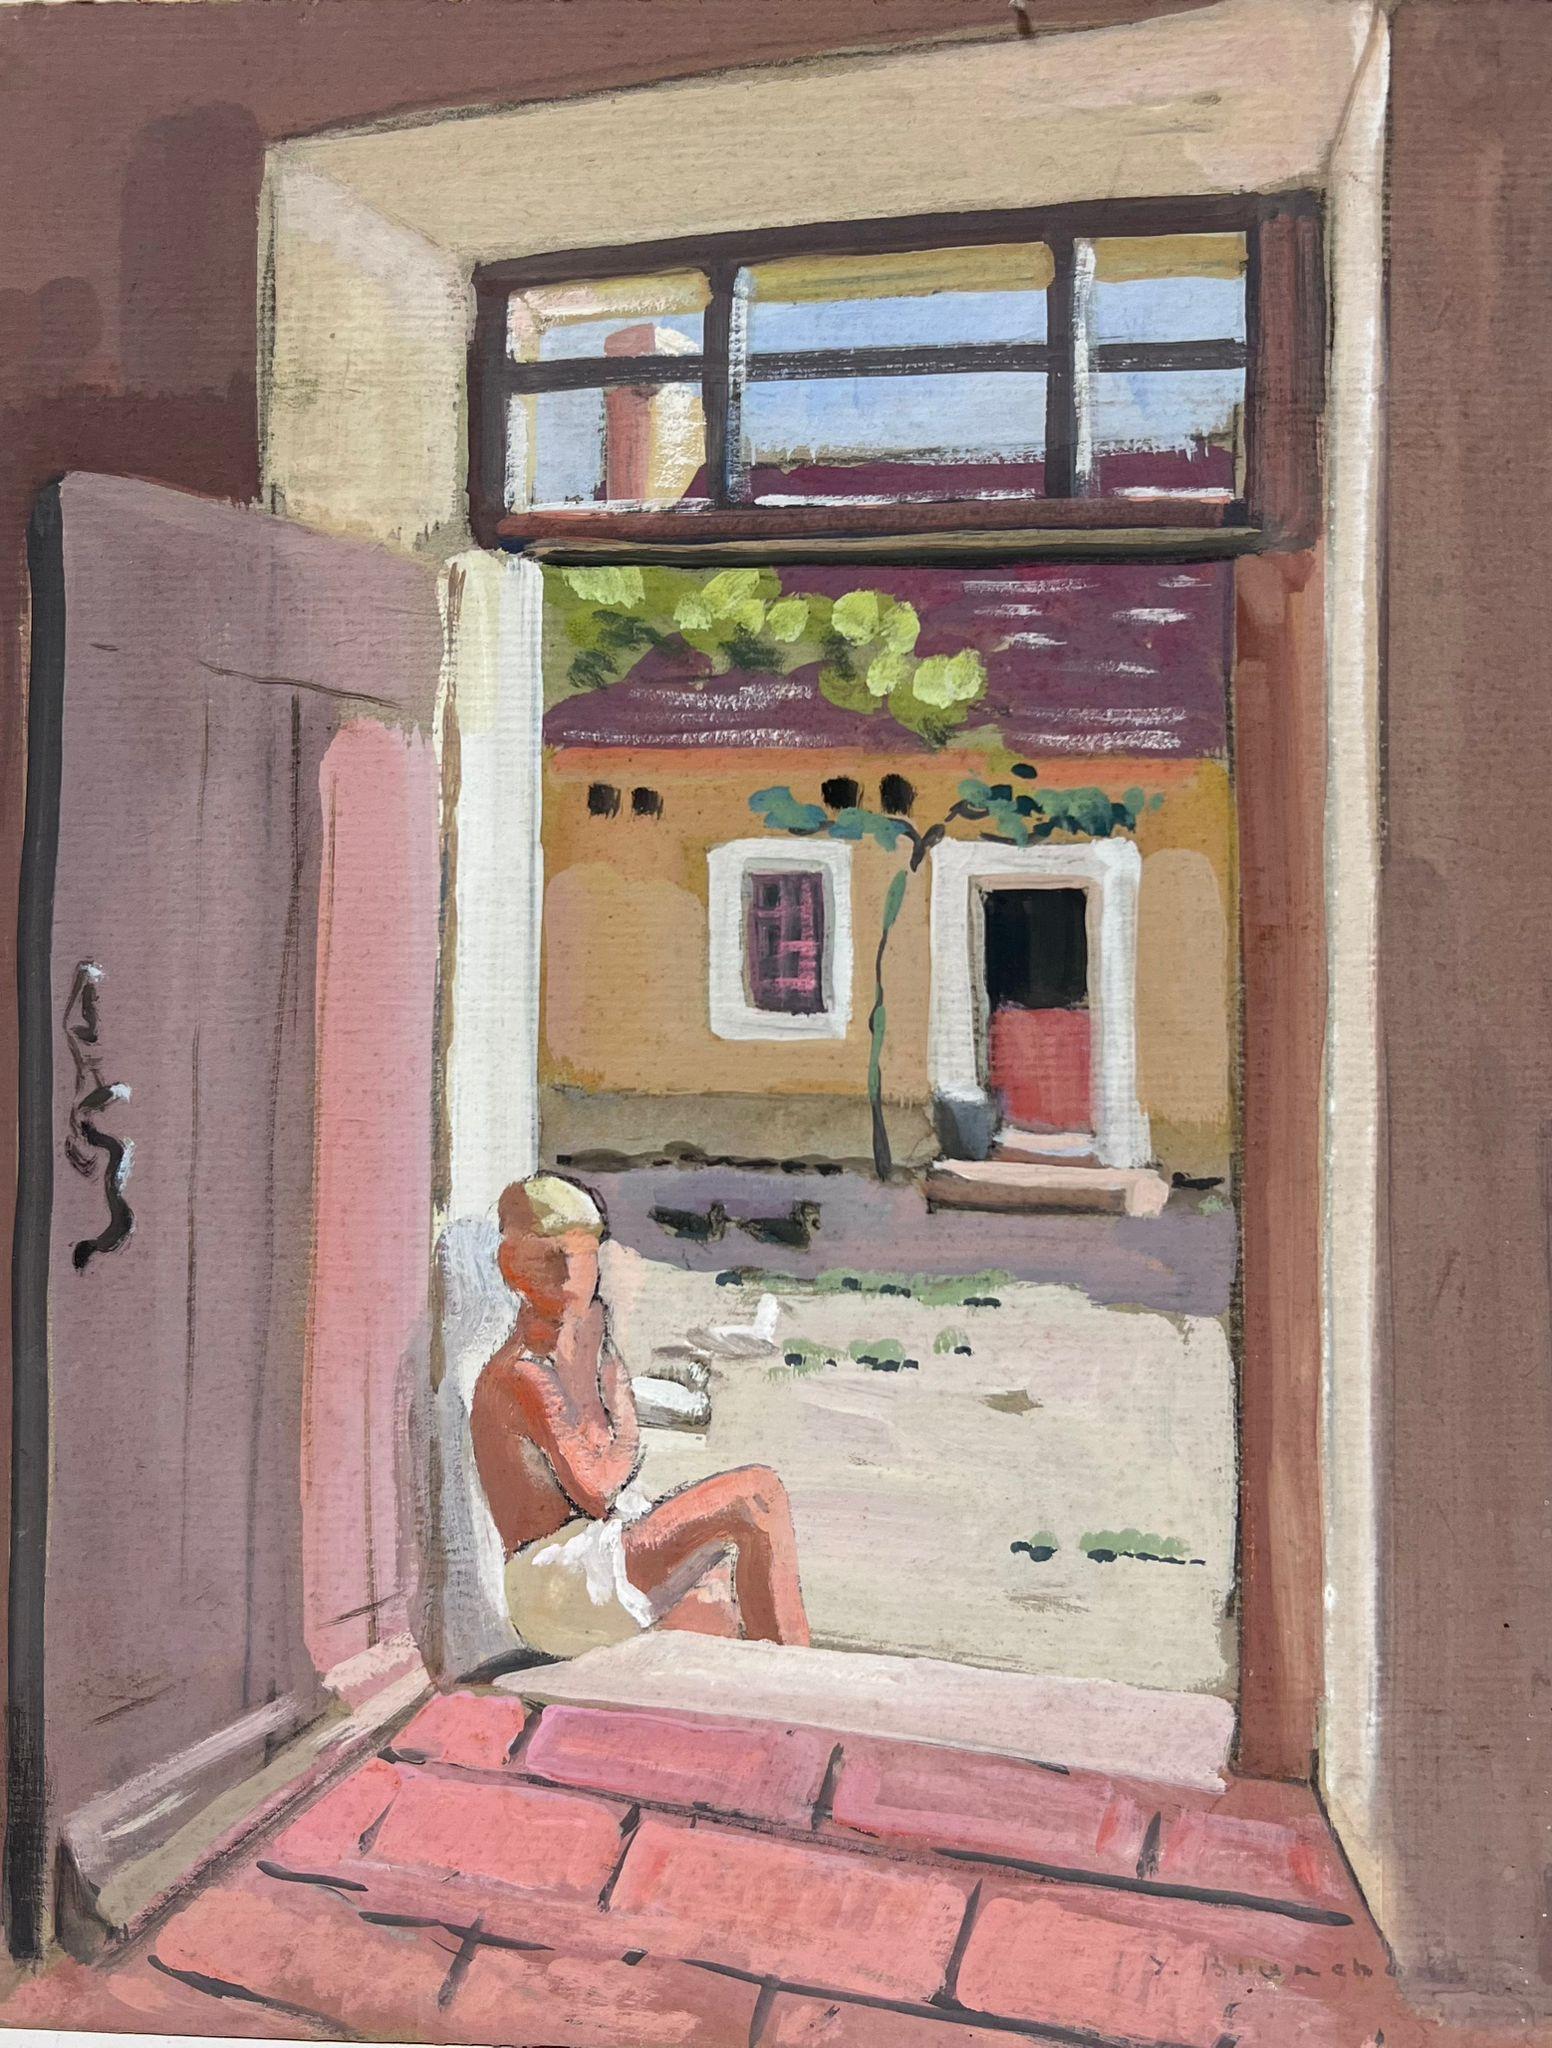 Mannequin impressionniste français des années 1930 encadré de porte de maison en pierre rose 